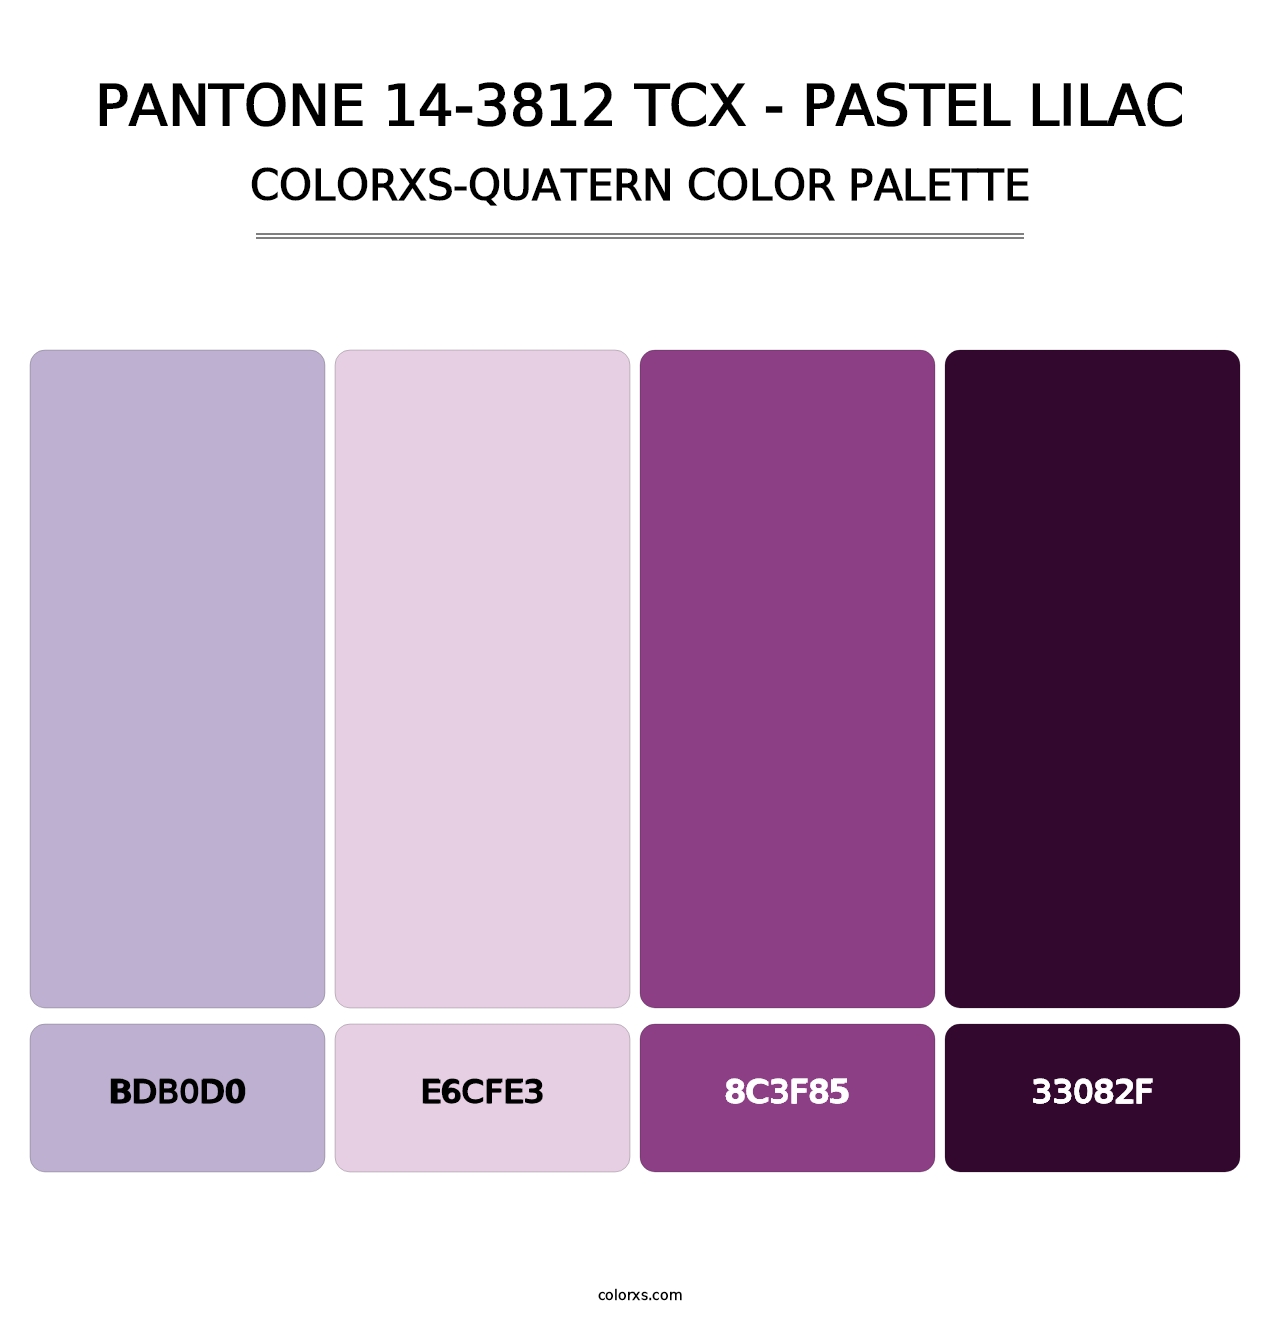 PANTONE 14-3812 TCX - Pastel Lilac - Colorxs Quatern Palette